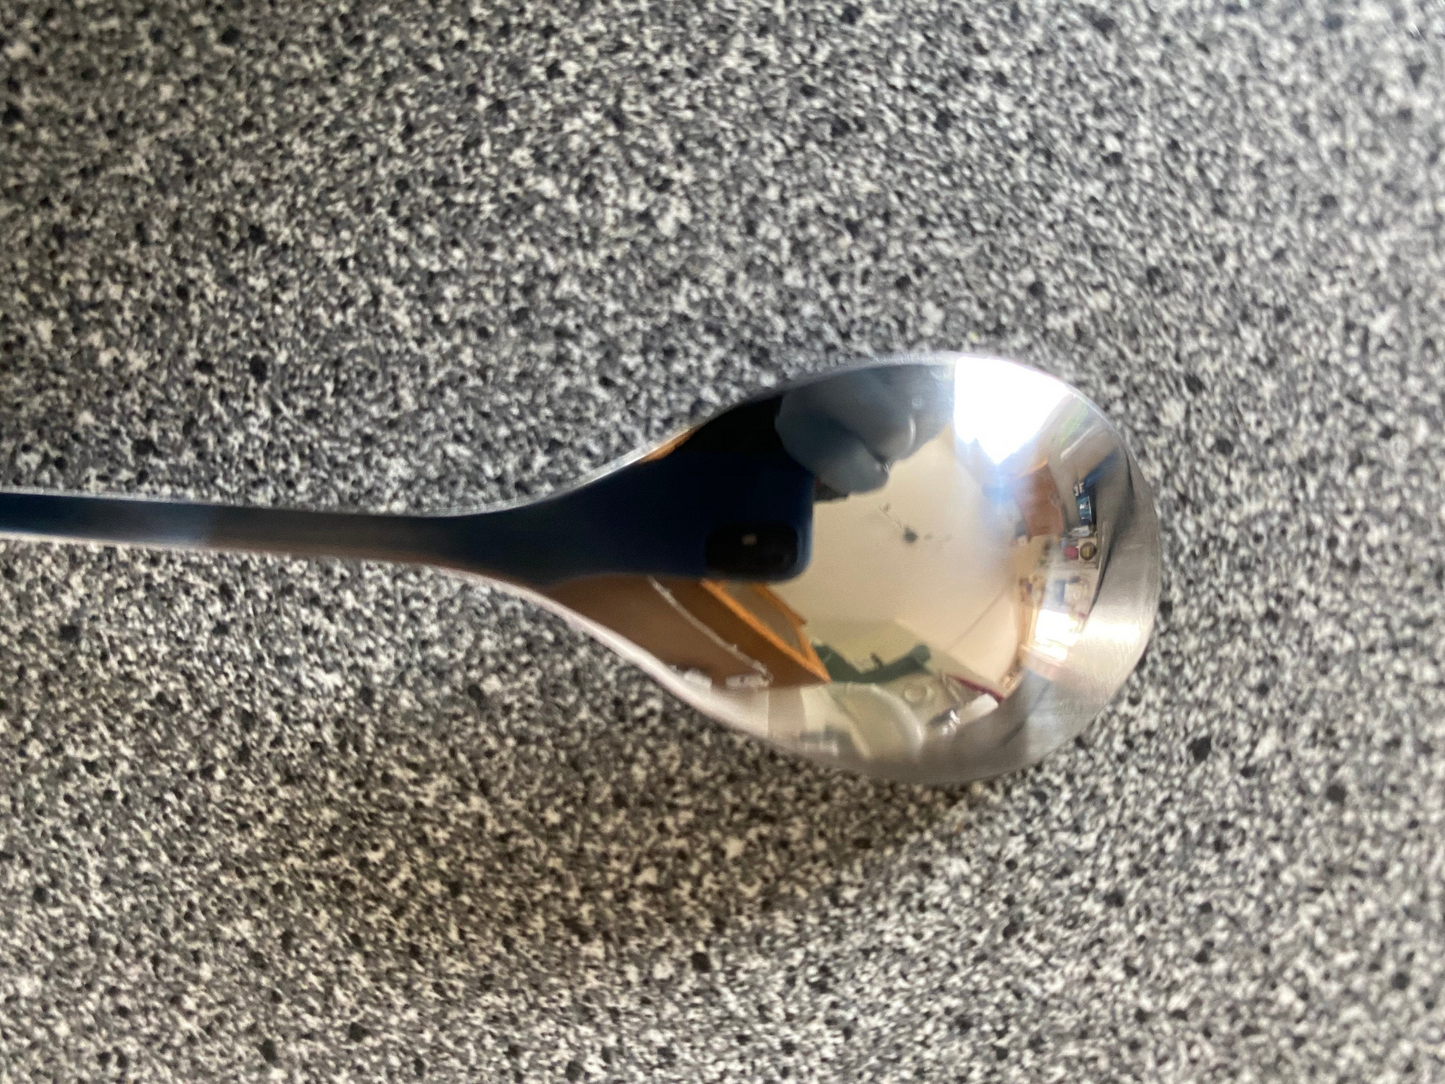 Vintage Leafy Spoons